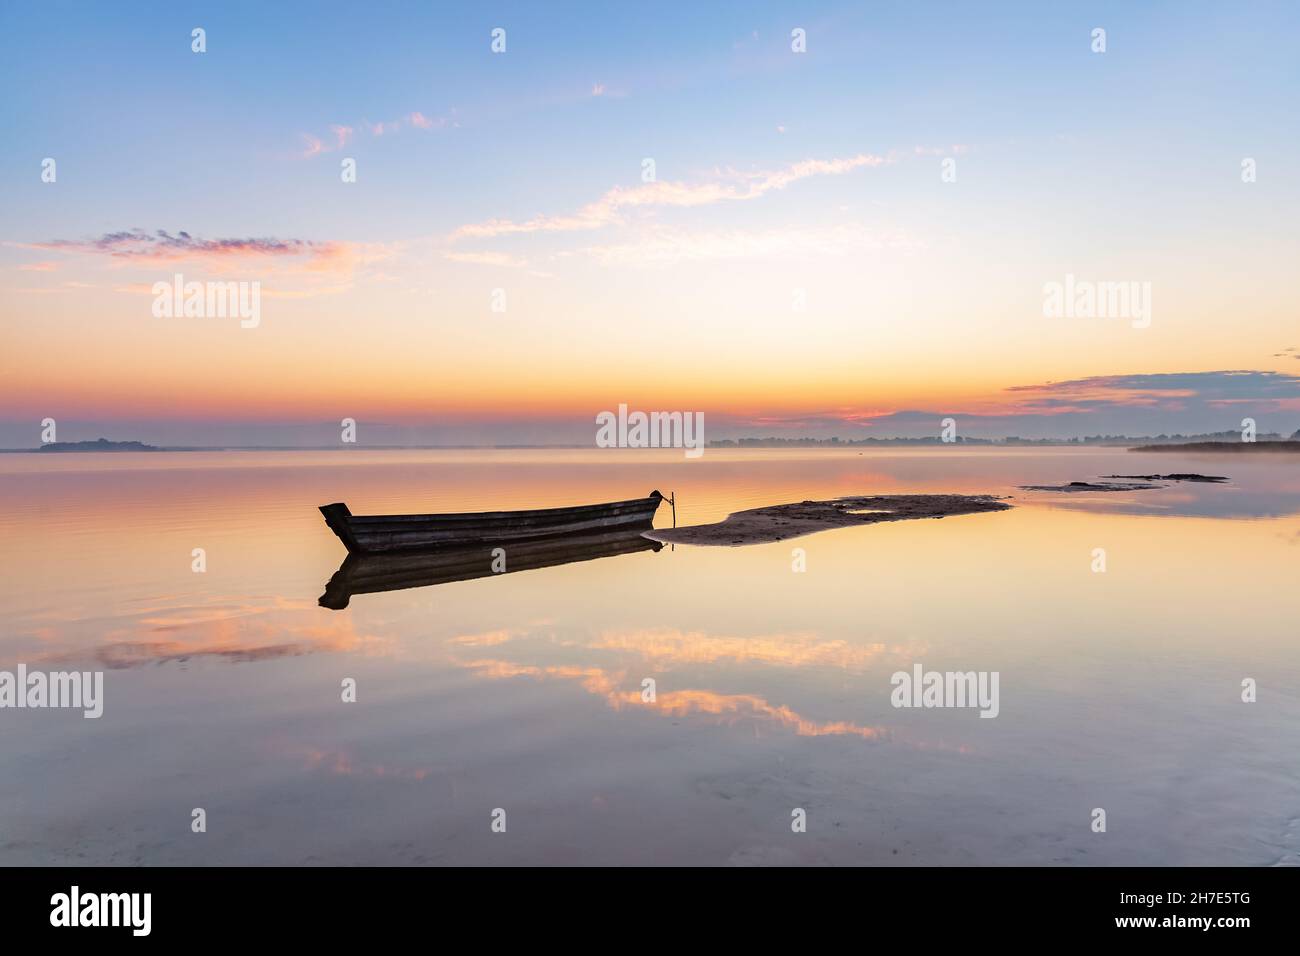 Incredibile alba. Barca solitaria nel lago tranquillo. La silhouette si riflette sull'acqua. Bella giornata estiva. Cielo blu con nuvole. Posizione posiziona gravità Foto Stock